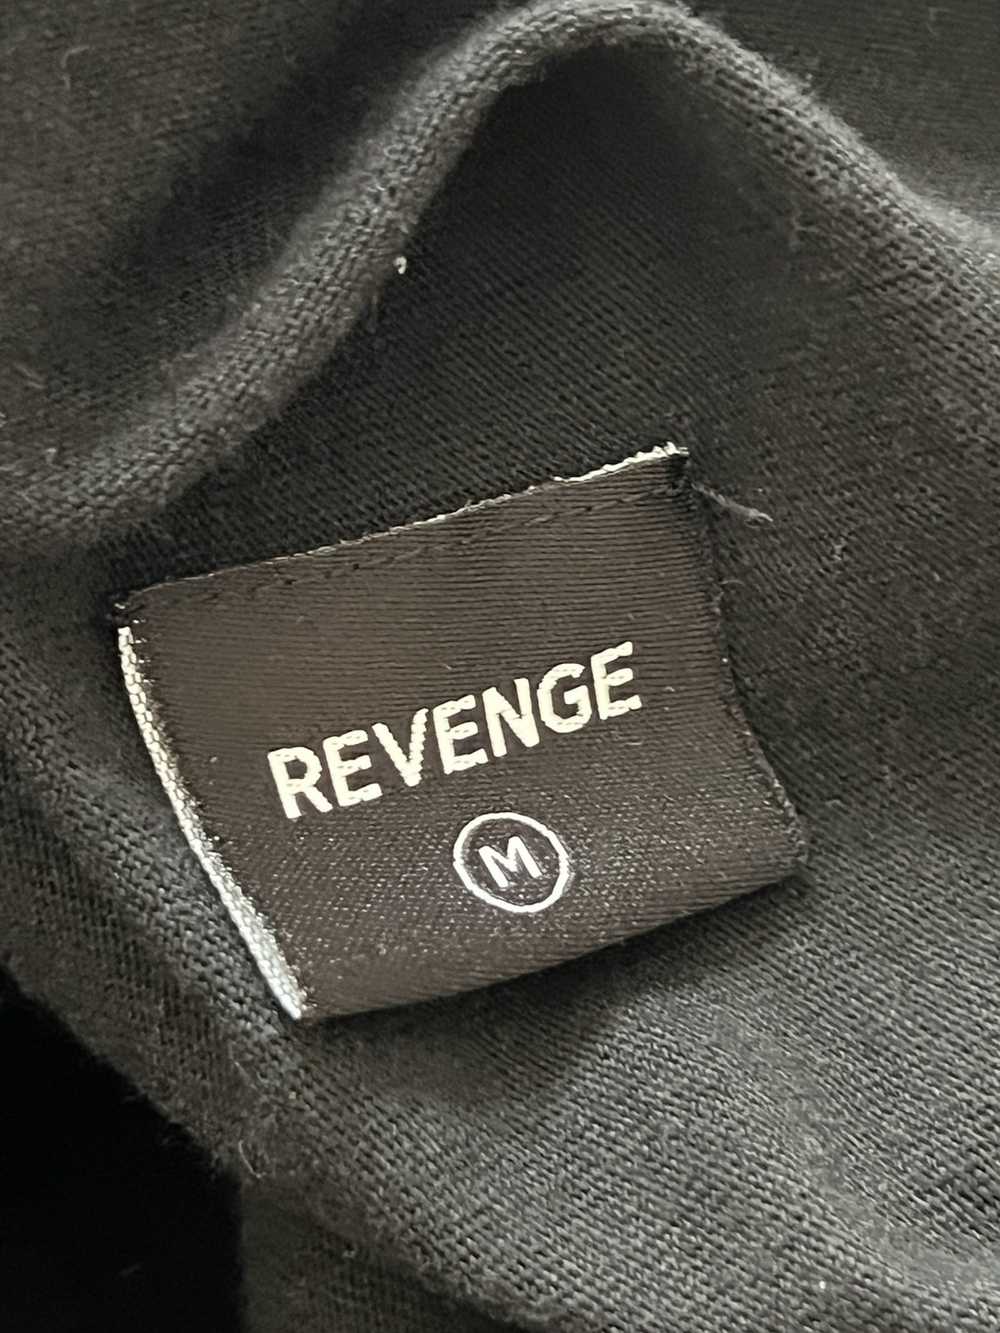 Revenge Revenge - image 5